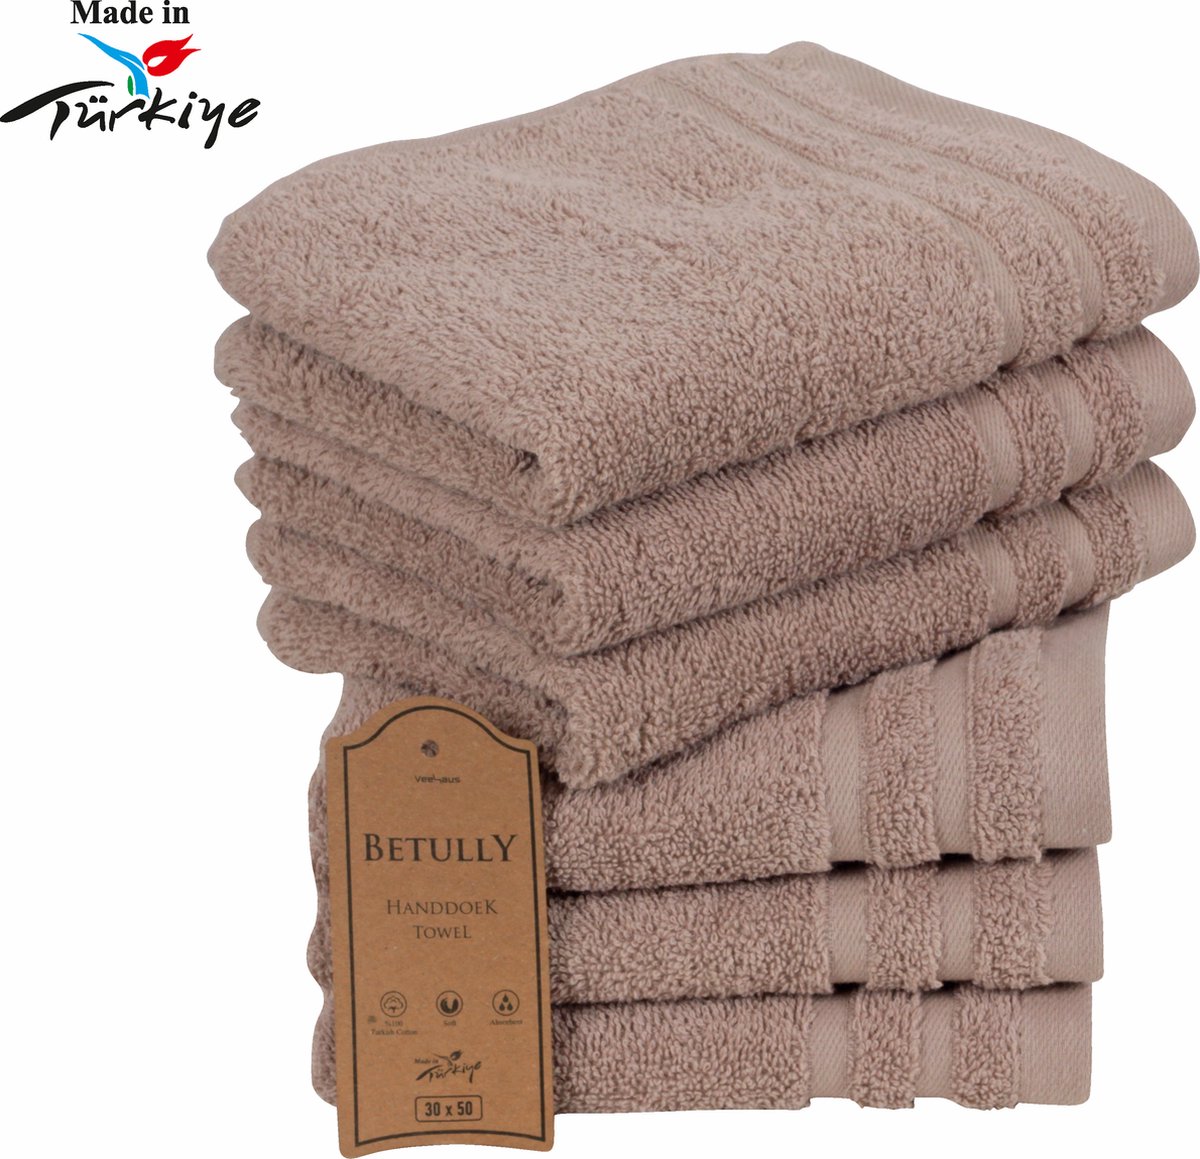 Betully ® - Handdoeken 30 x 50 cm - set van 6 - Hotelkwaliteit Handdoeken – Zware kwaliteit 500 g/m2 Beige